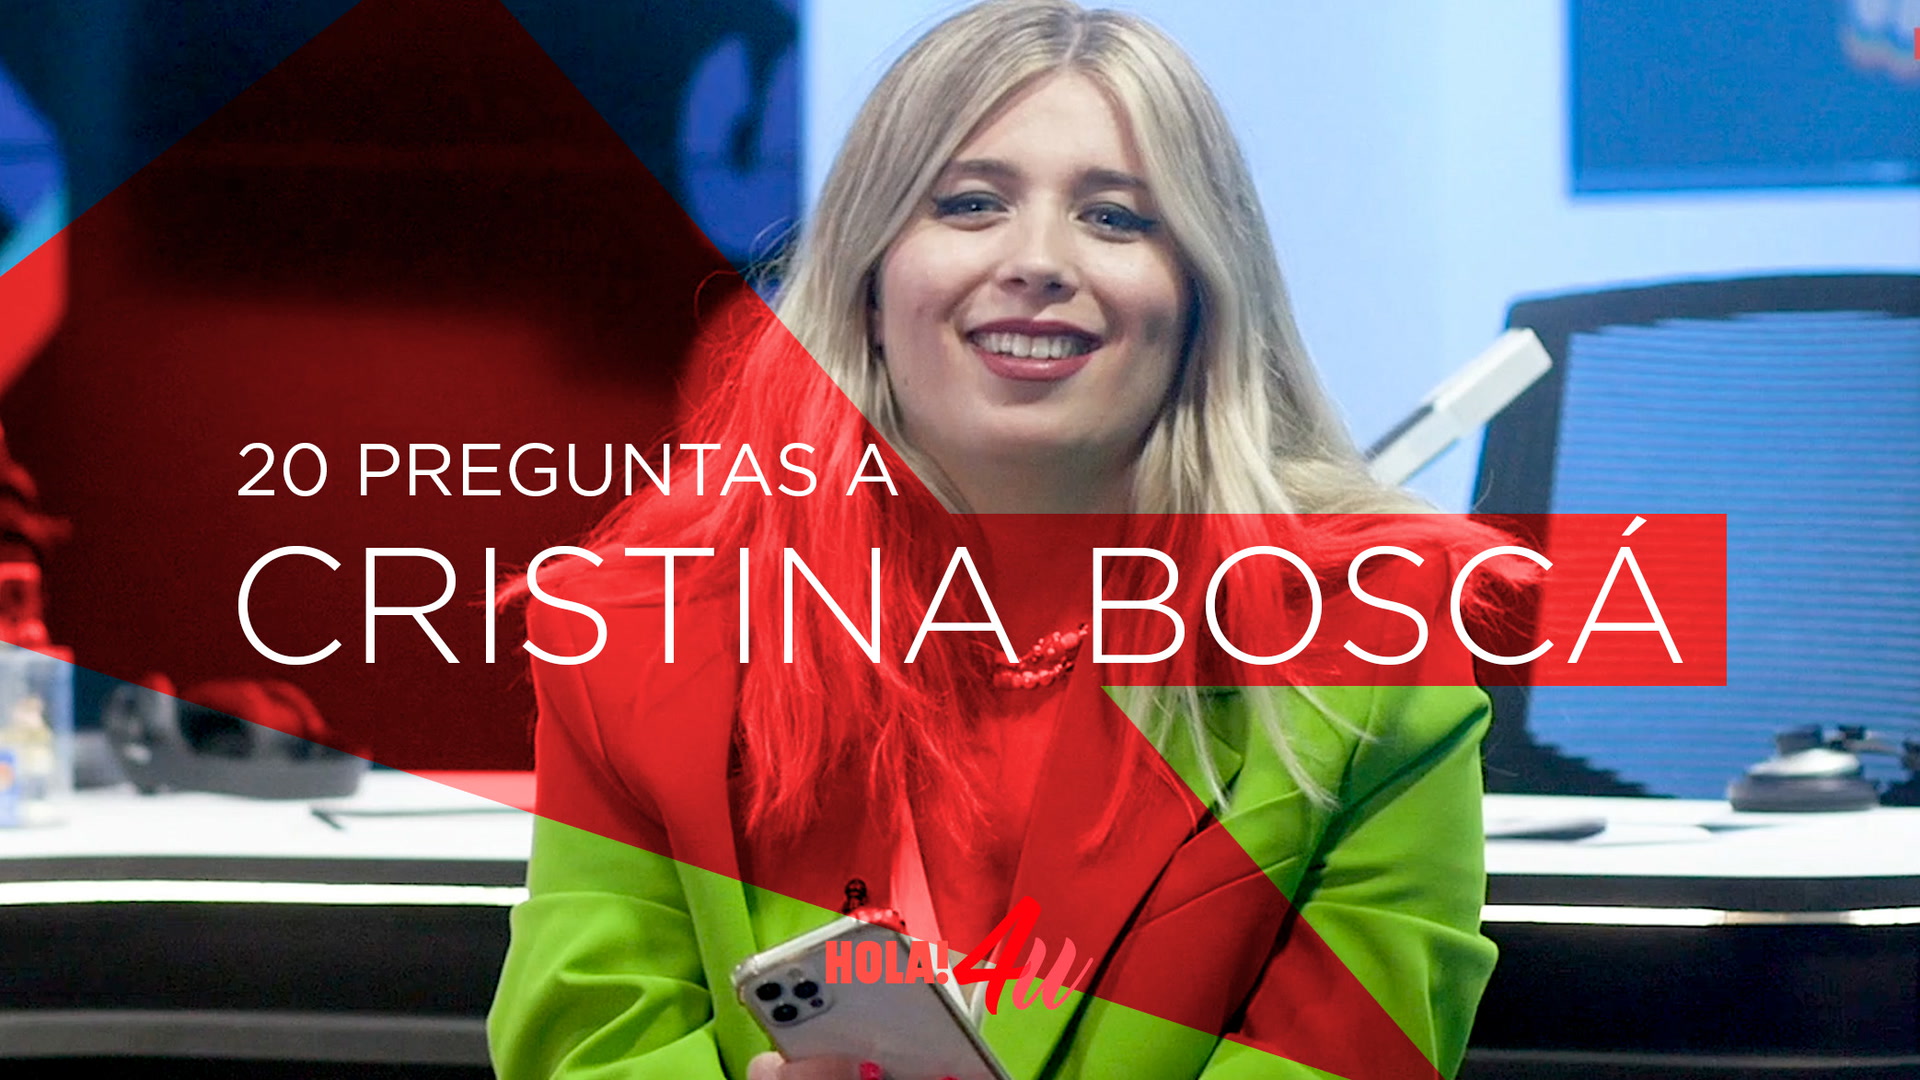 Cristina Bosca